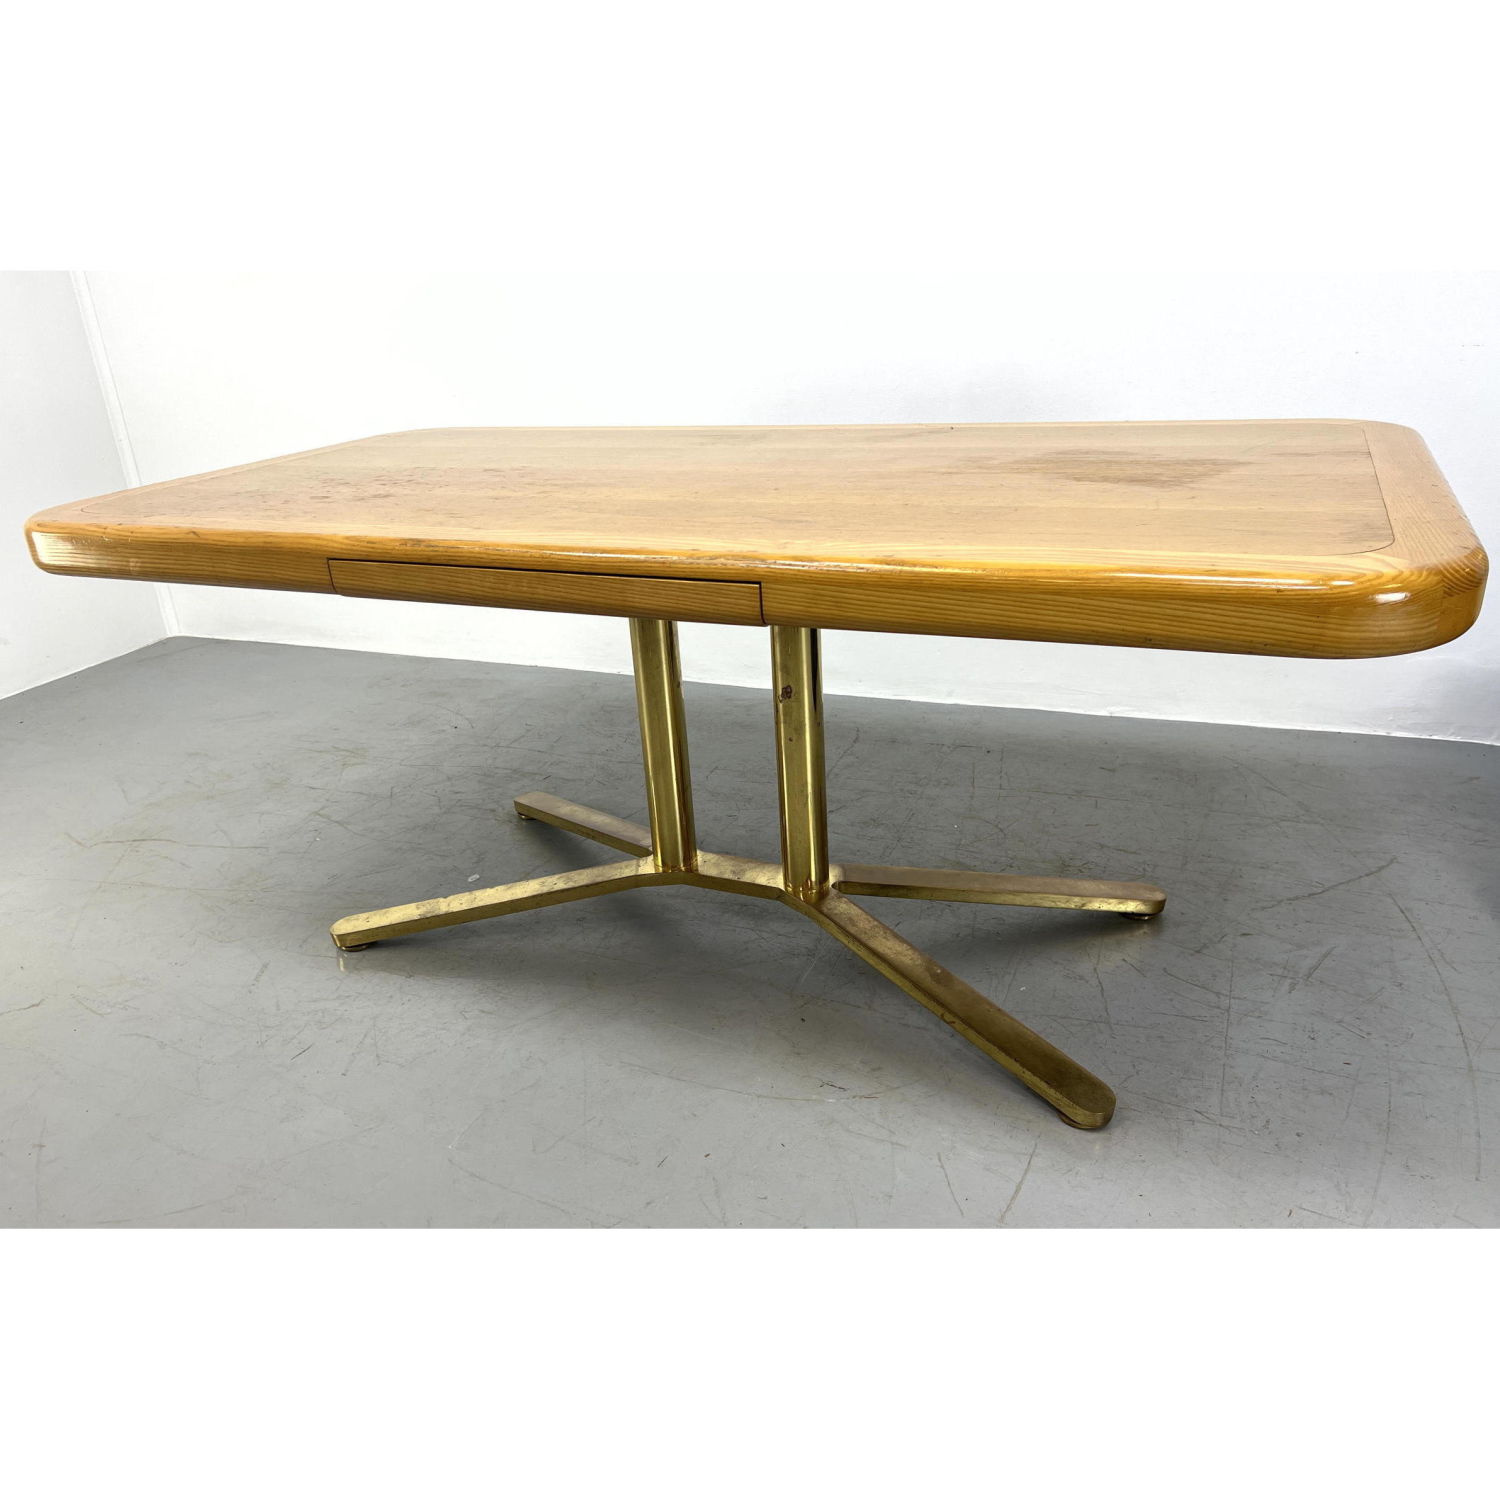 Modernist Oak Desk Quality Design 2ba51f